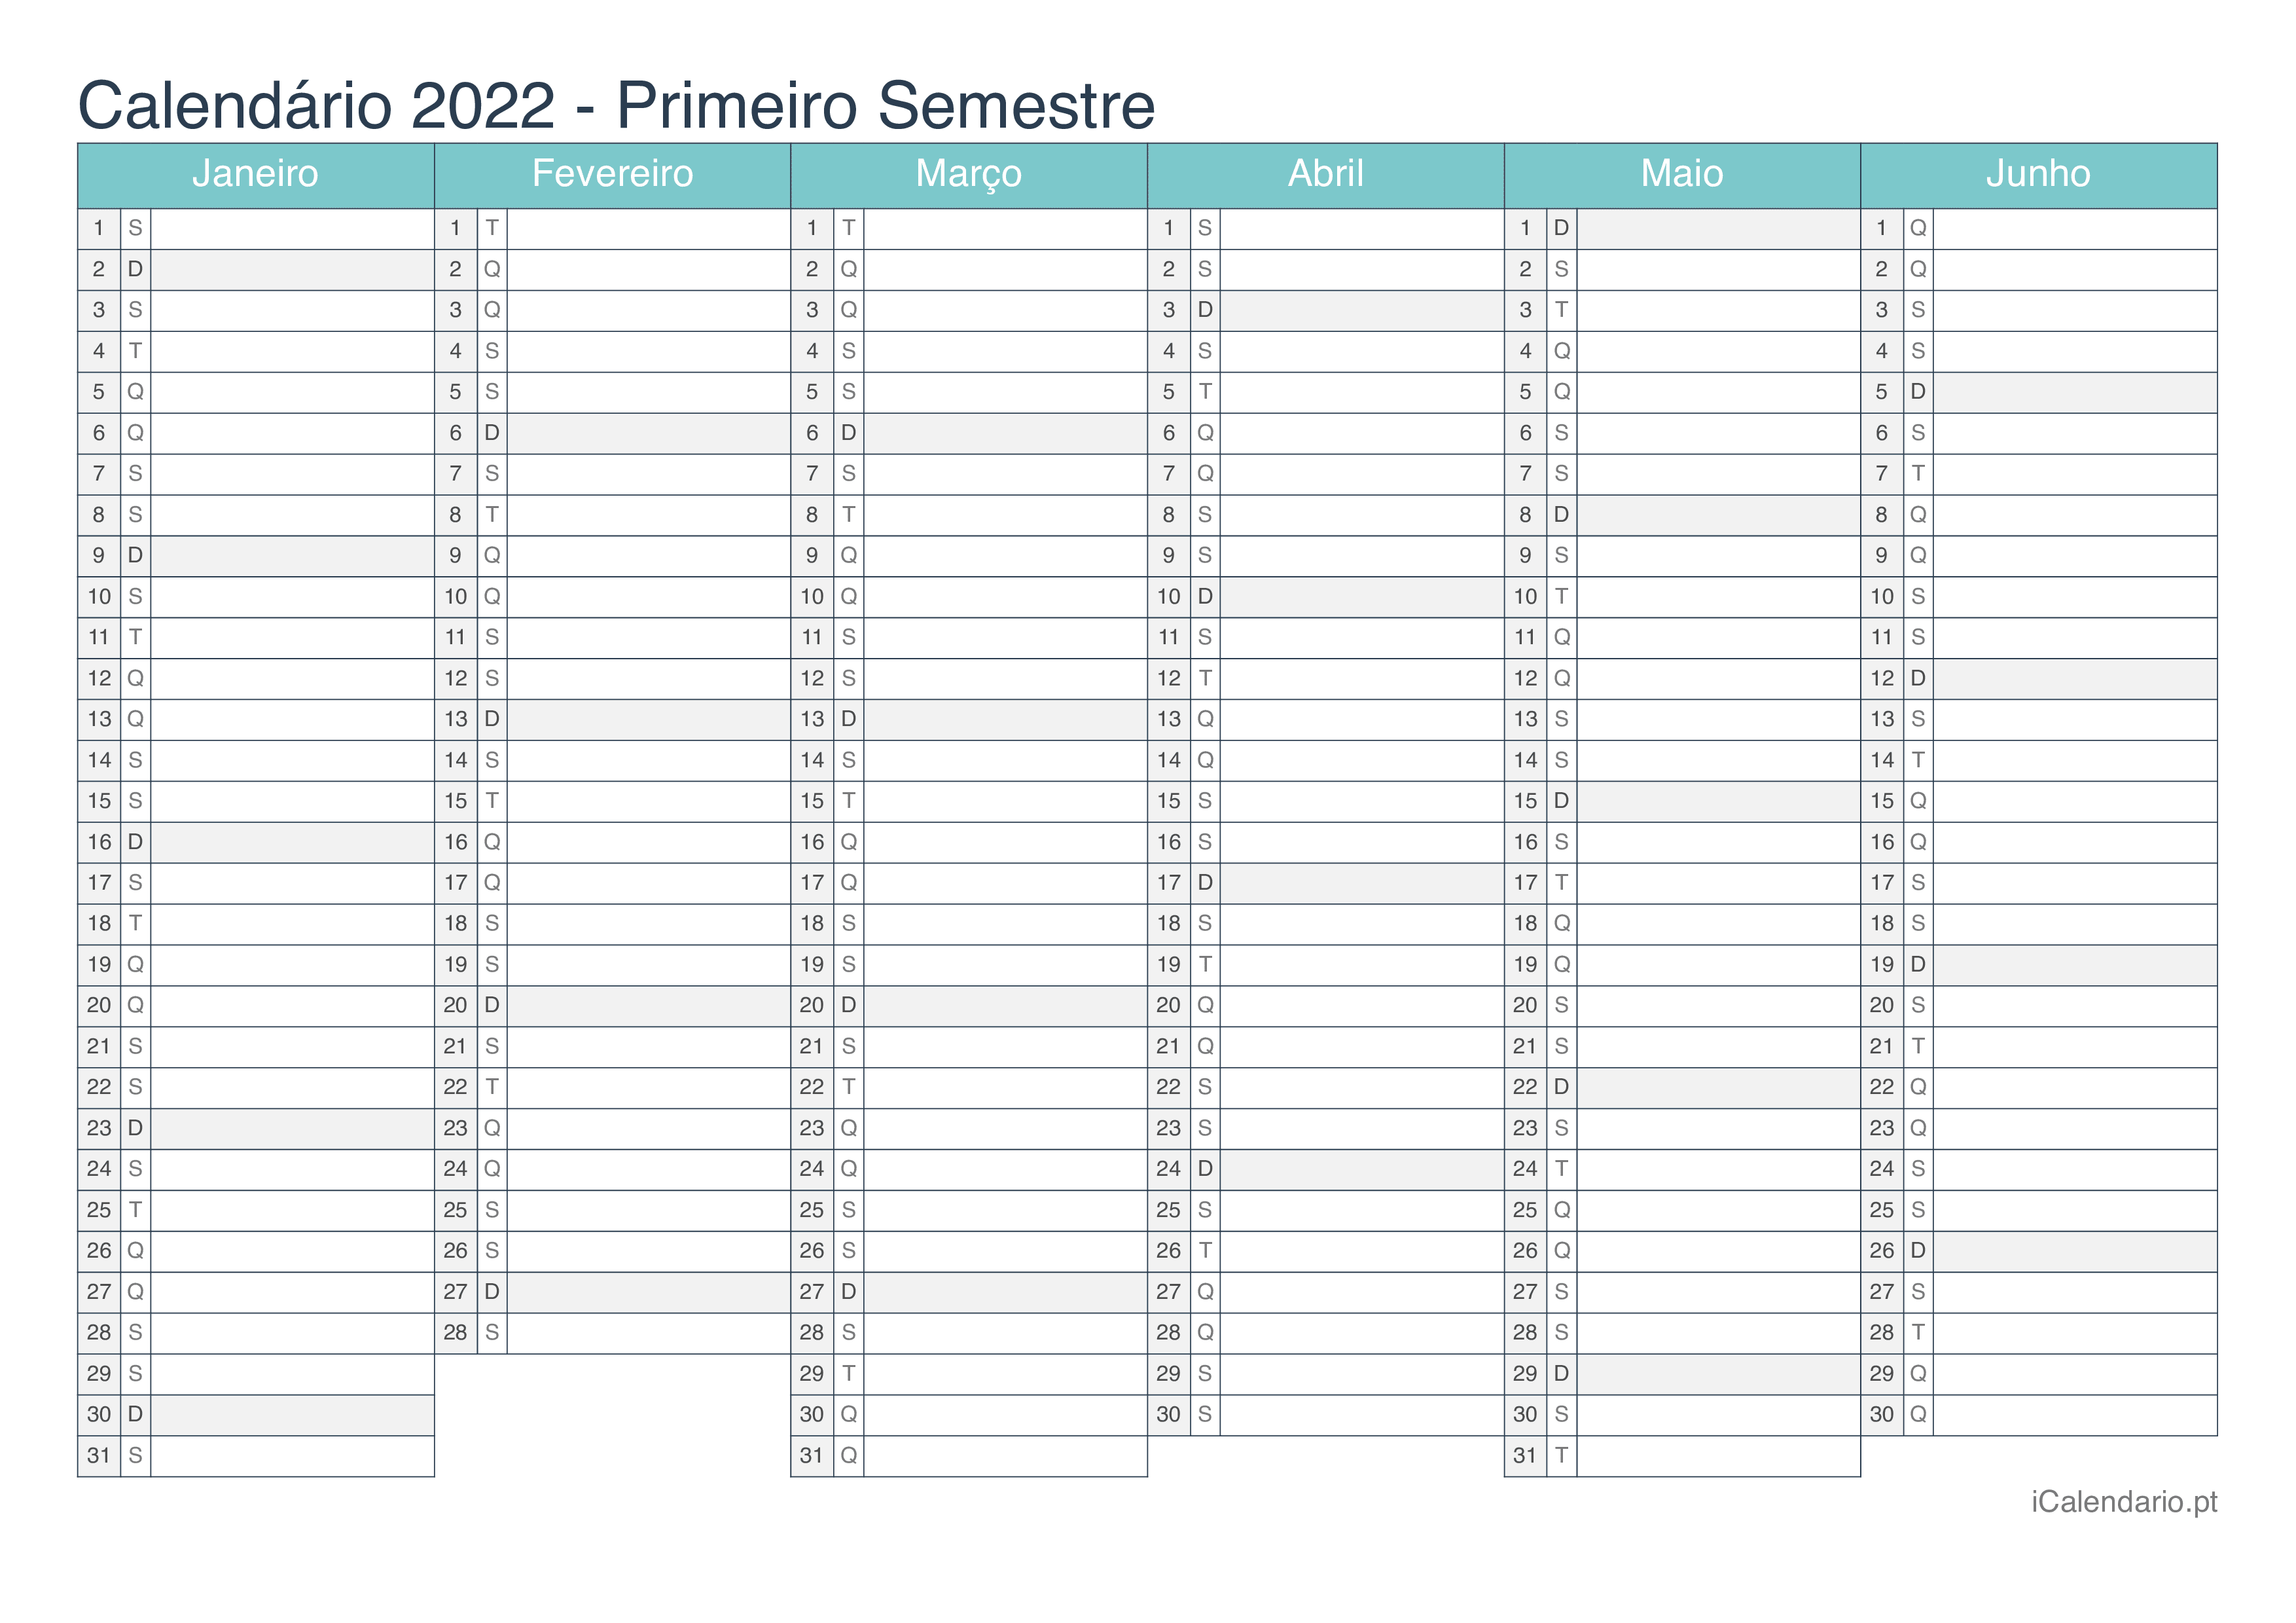 Calendário por semestre 2022 - Turquesa